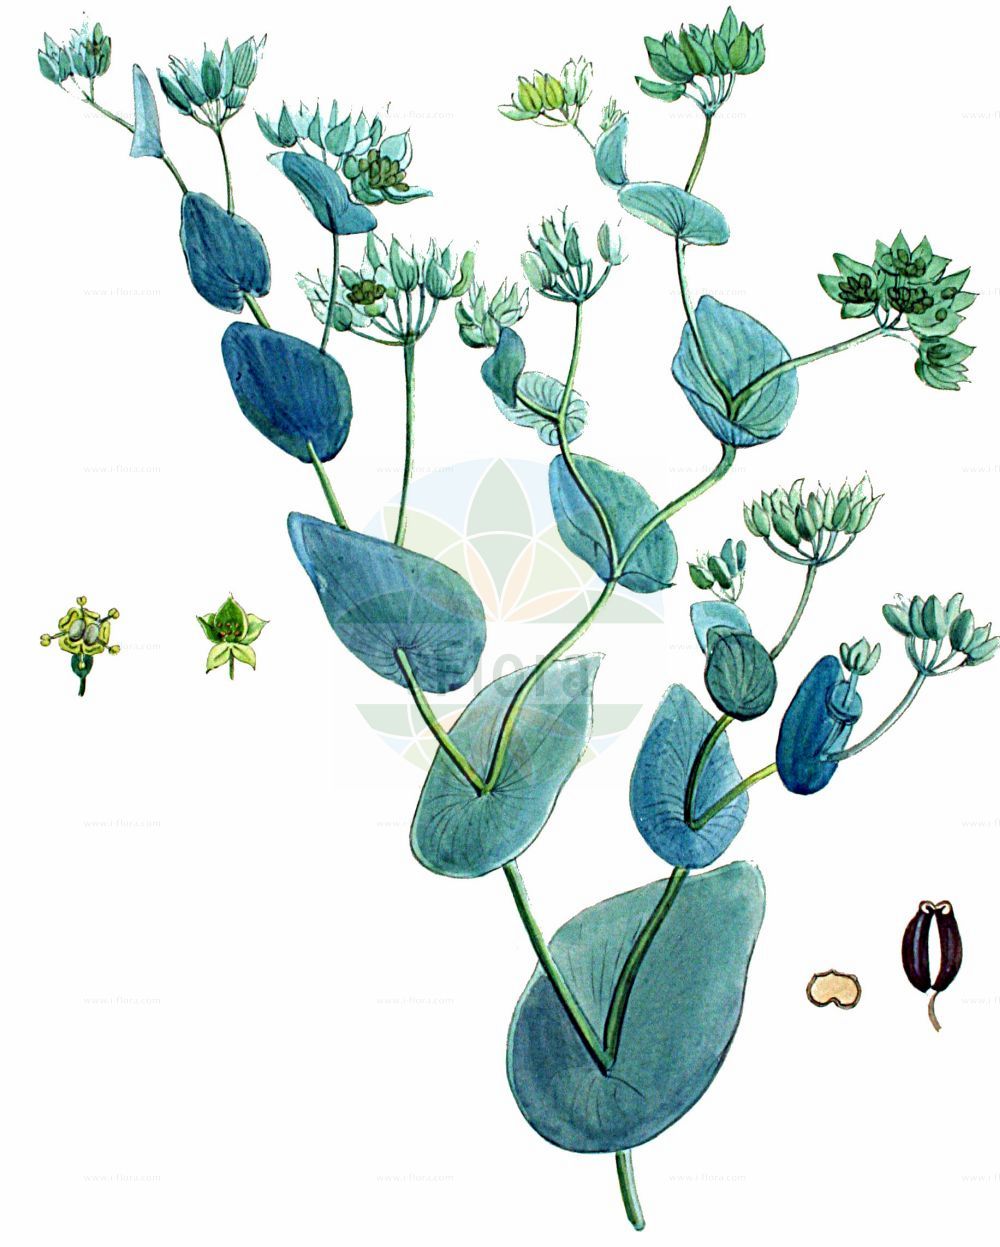 Historische Abbildung von Bupleurum rotundifolium (Rundblättriges Hasenohr - Thorow-wax). Das Bild zeigt Blatt, Bluete, Frucht und Same. ---- Historical Drawing of Bupleurum rotundifolium (Rundblättriges Hasenohr - Thorow-wax). The image is showing leaf, flower, fruit and seed.(Bupleurum rotundifolium,Rundblättriges Hasenohr,Thorow-wax,Bupleurum rotundifolium,Rundblaettriges Hasenohr,Acker-Hasenohr,Thorow-wax,Hare's-ear,Modesty,Bupleurum,Hasenohr,Hare's Ear,Apiaceae,Doldengewächse,Carrot family,Blatt,Bluete,Frucht,Same,leaf,flower,fruit,seed,Kops (1800-1934))